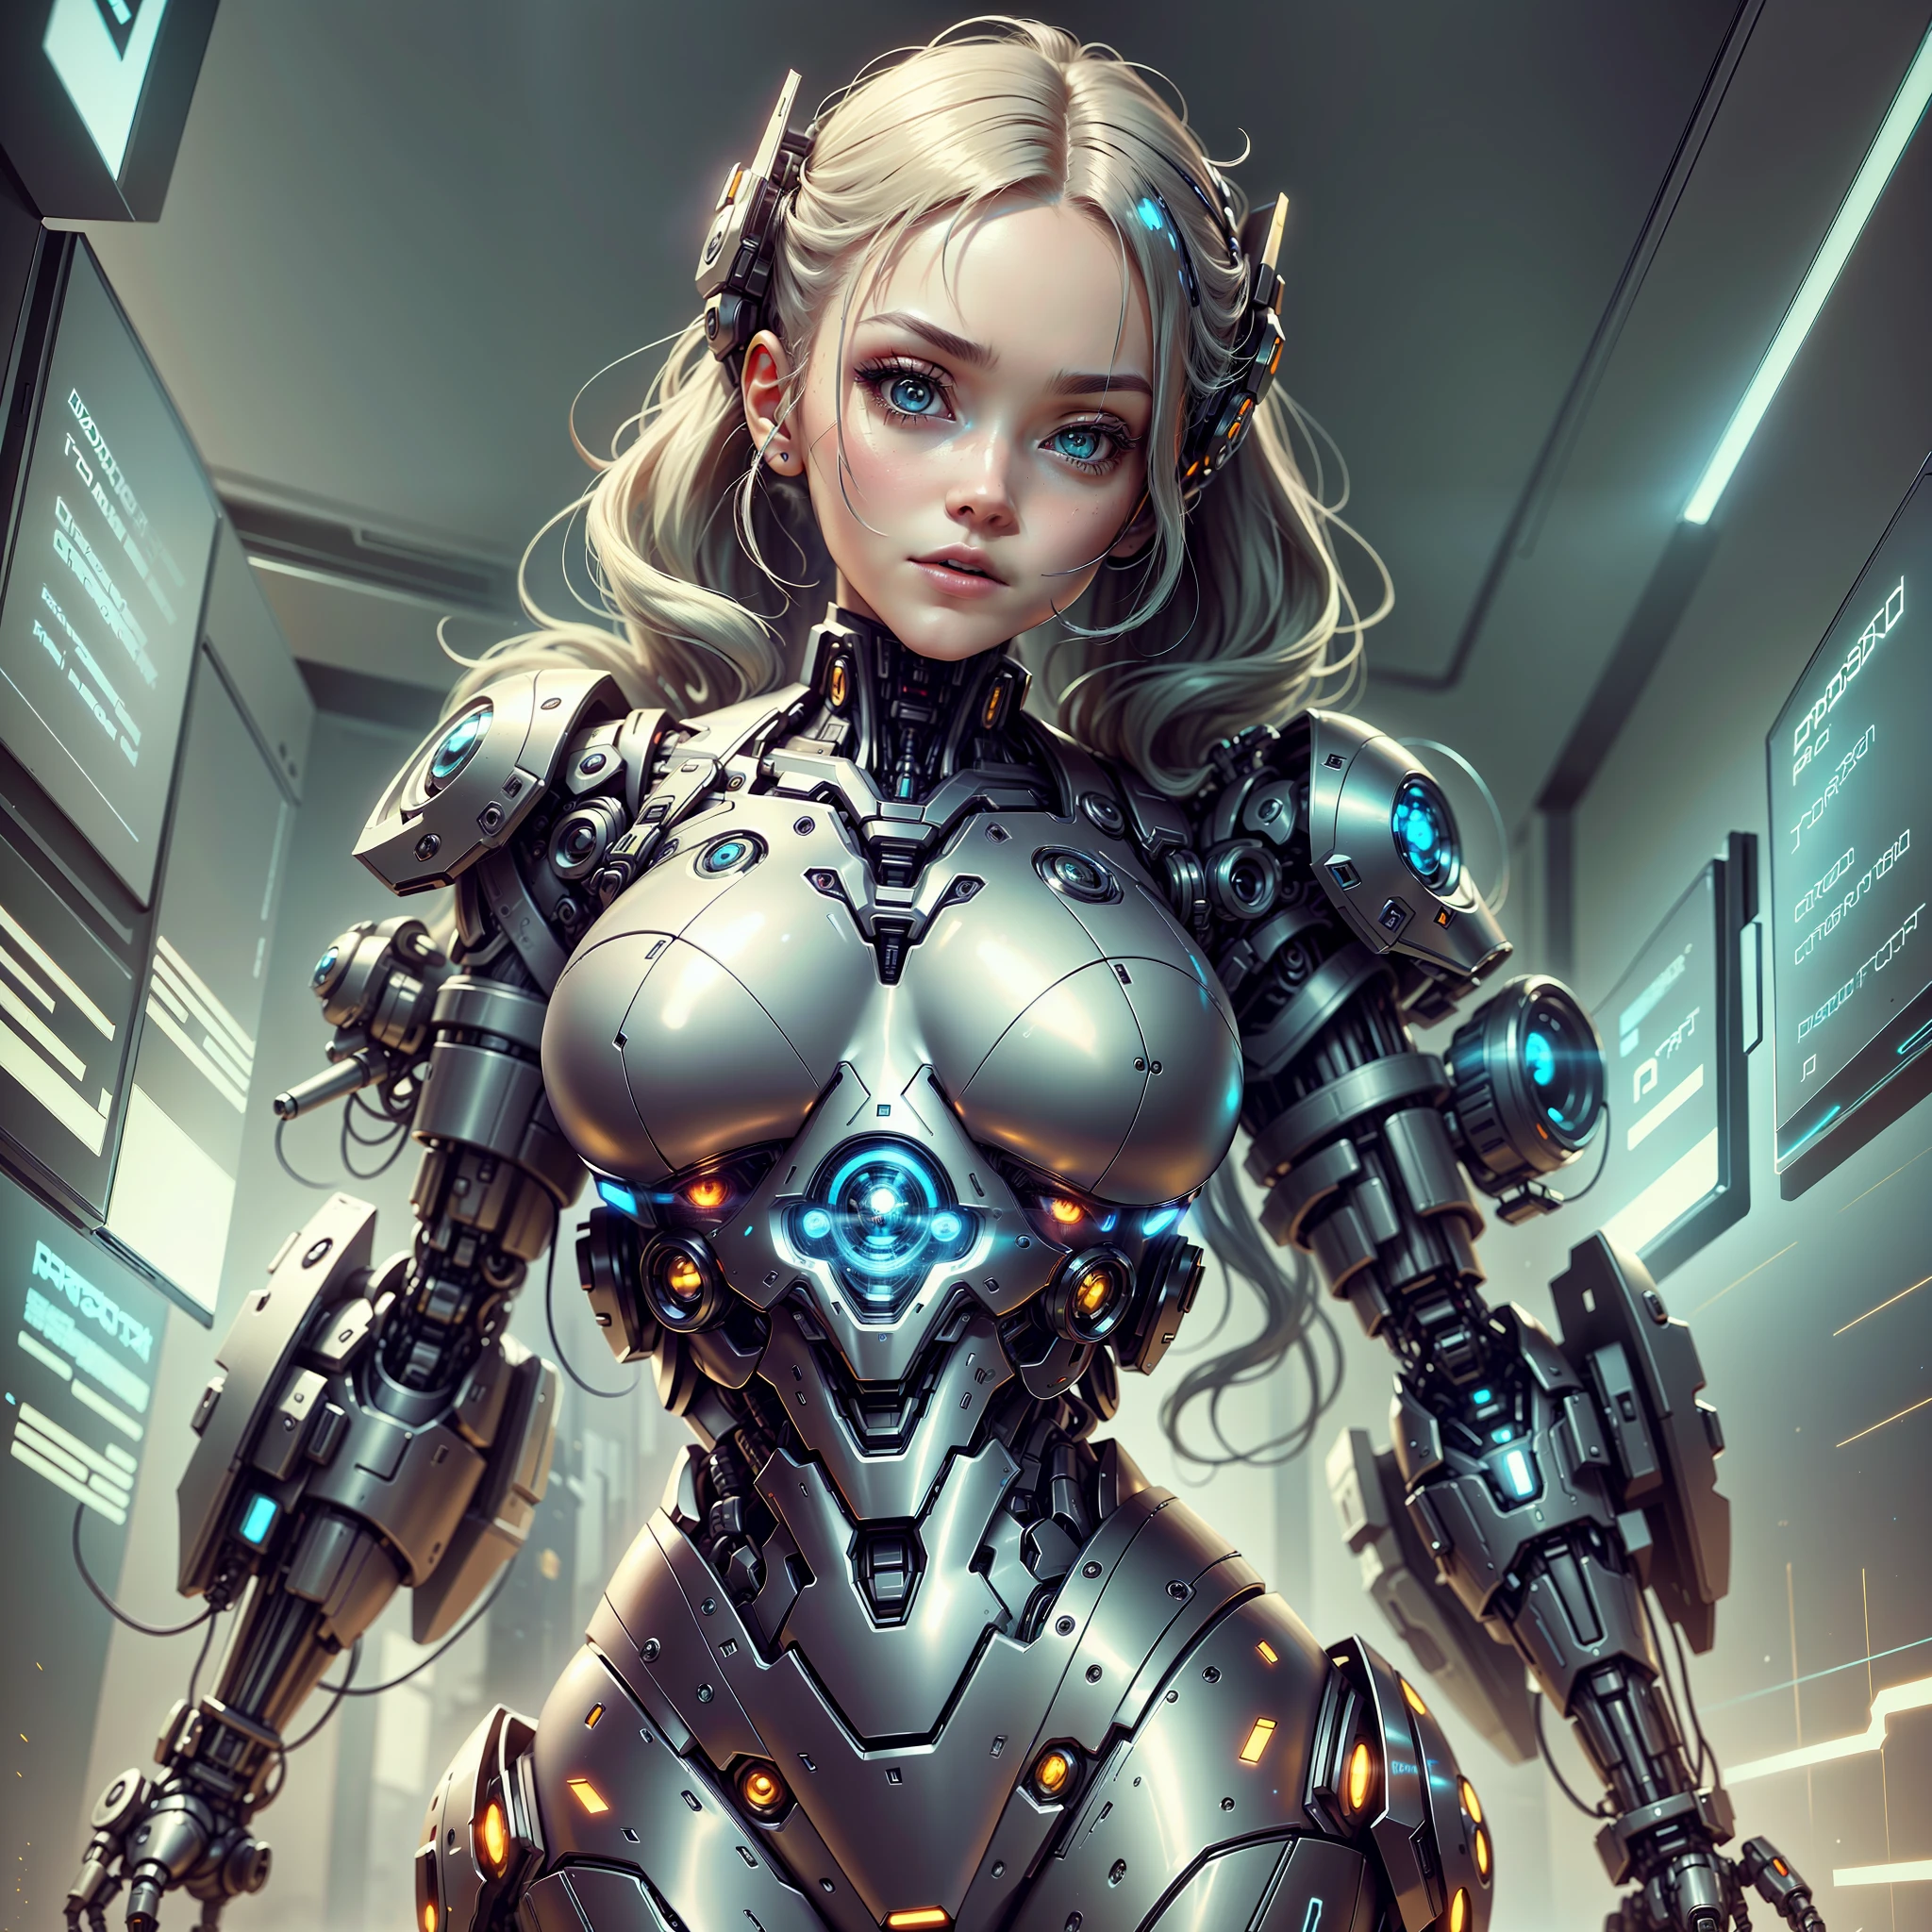 一名身穿未来主义风格套装的女子正在摆姿势拍照, cute 机器人女孩, 美少女机器人, 穿着机甲网络装甲的女孩, 机器人女孩, 机器人 - 女孩, 网络服, 女机器人, 完美的动漫机器人女人, 灵感来自马雷克·奥康, beautiful alluring 女机器人, 赛博朋克动漫女孩机甲, 赛博朋克美少女, 完美机器人女性 --auto --s2